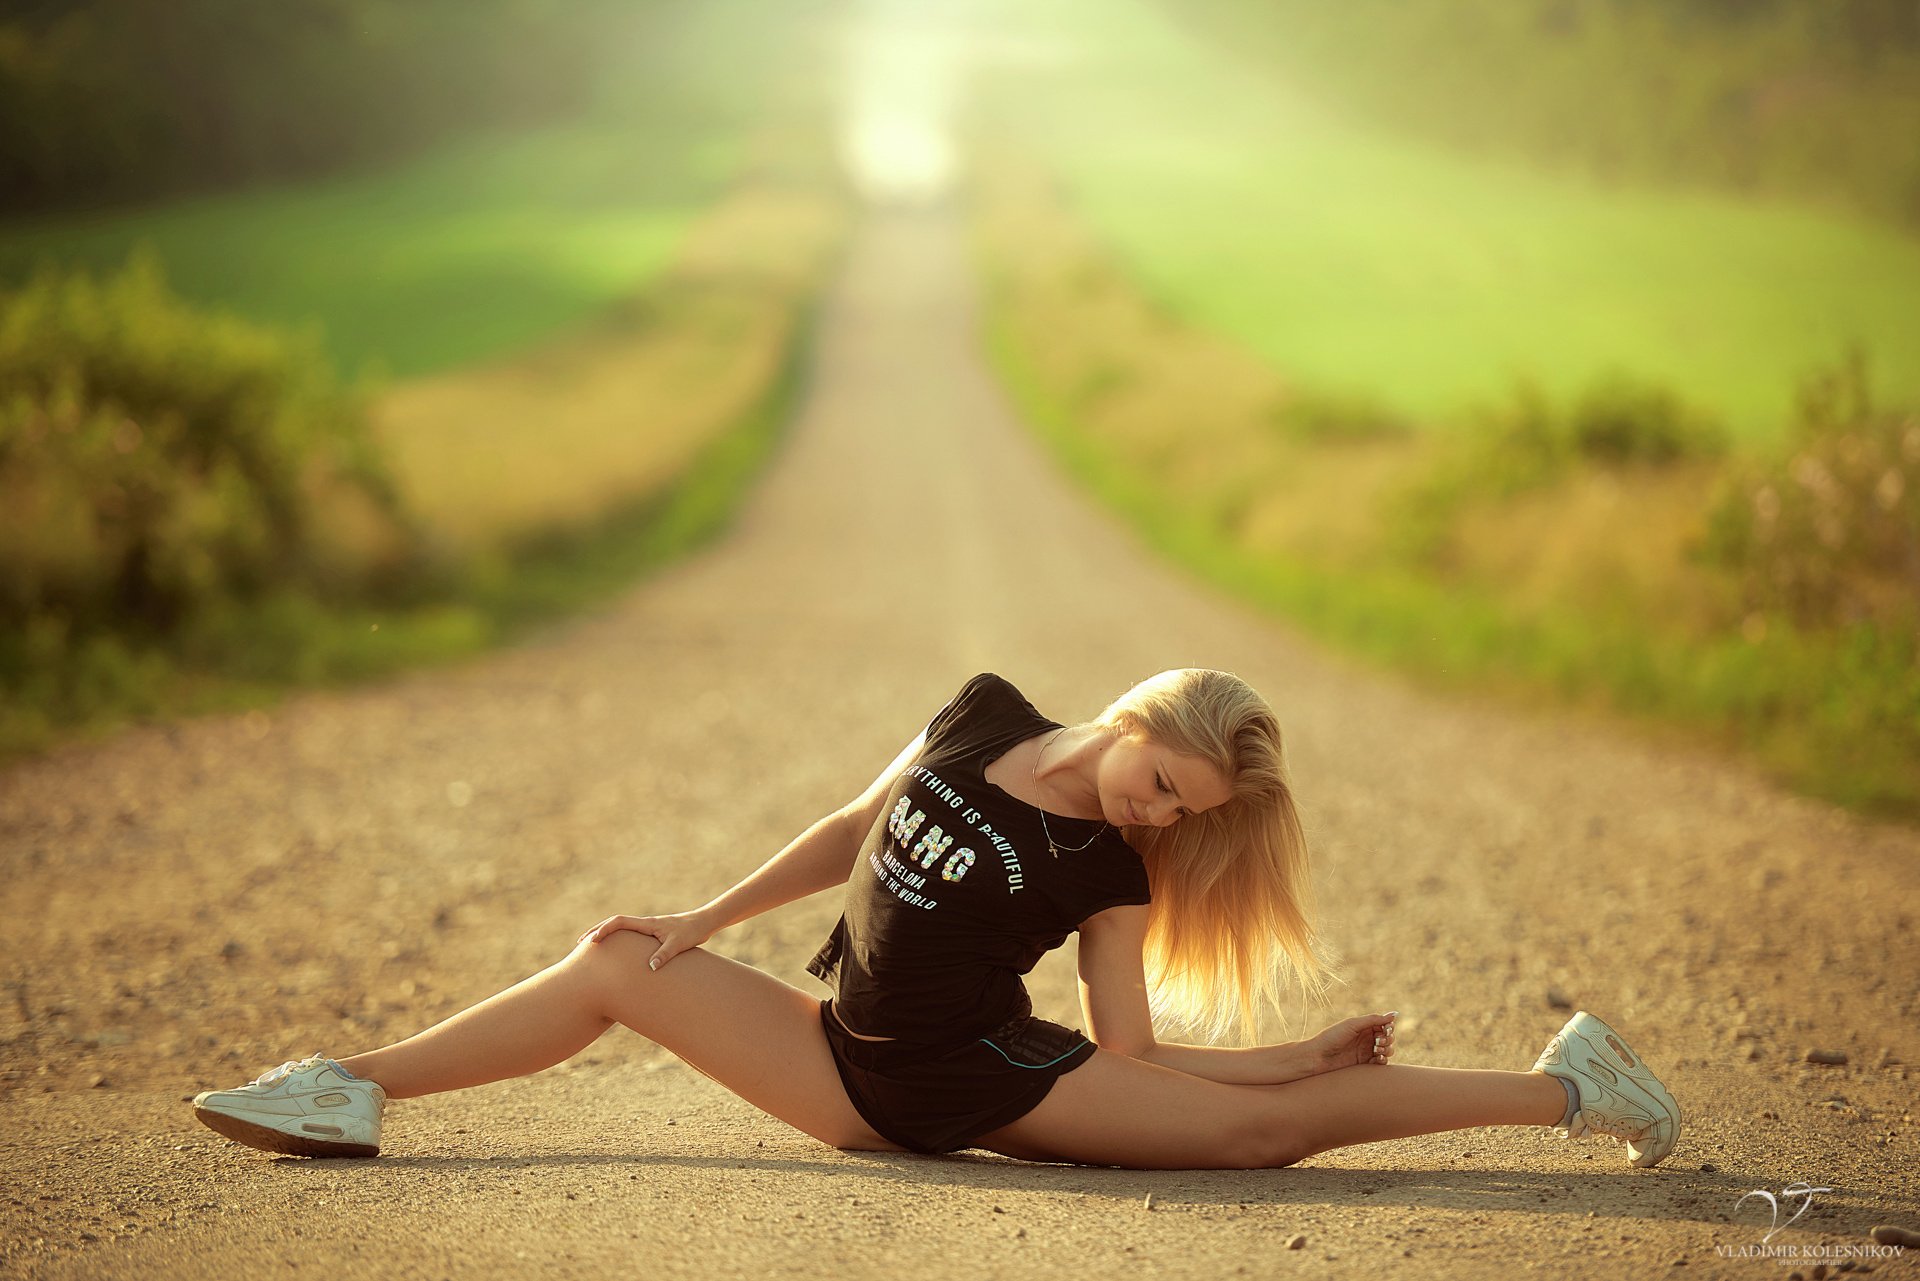 стройная спортивная девушка блондинка села посреди дороги поза растяжка шпагат гибкость футболка шортики кроссовки солнце зелень размытие